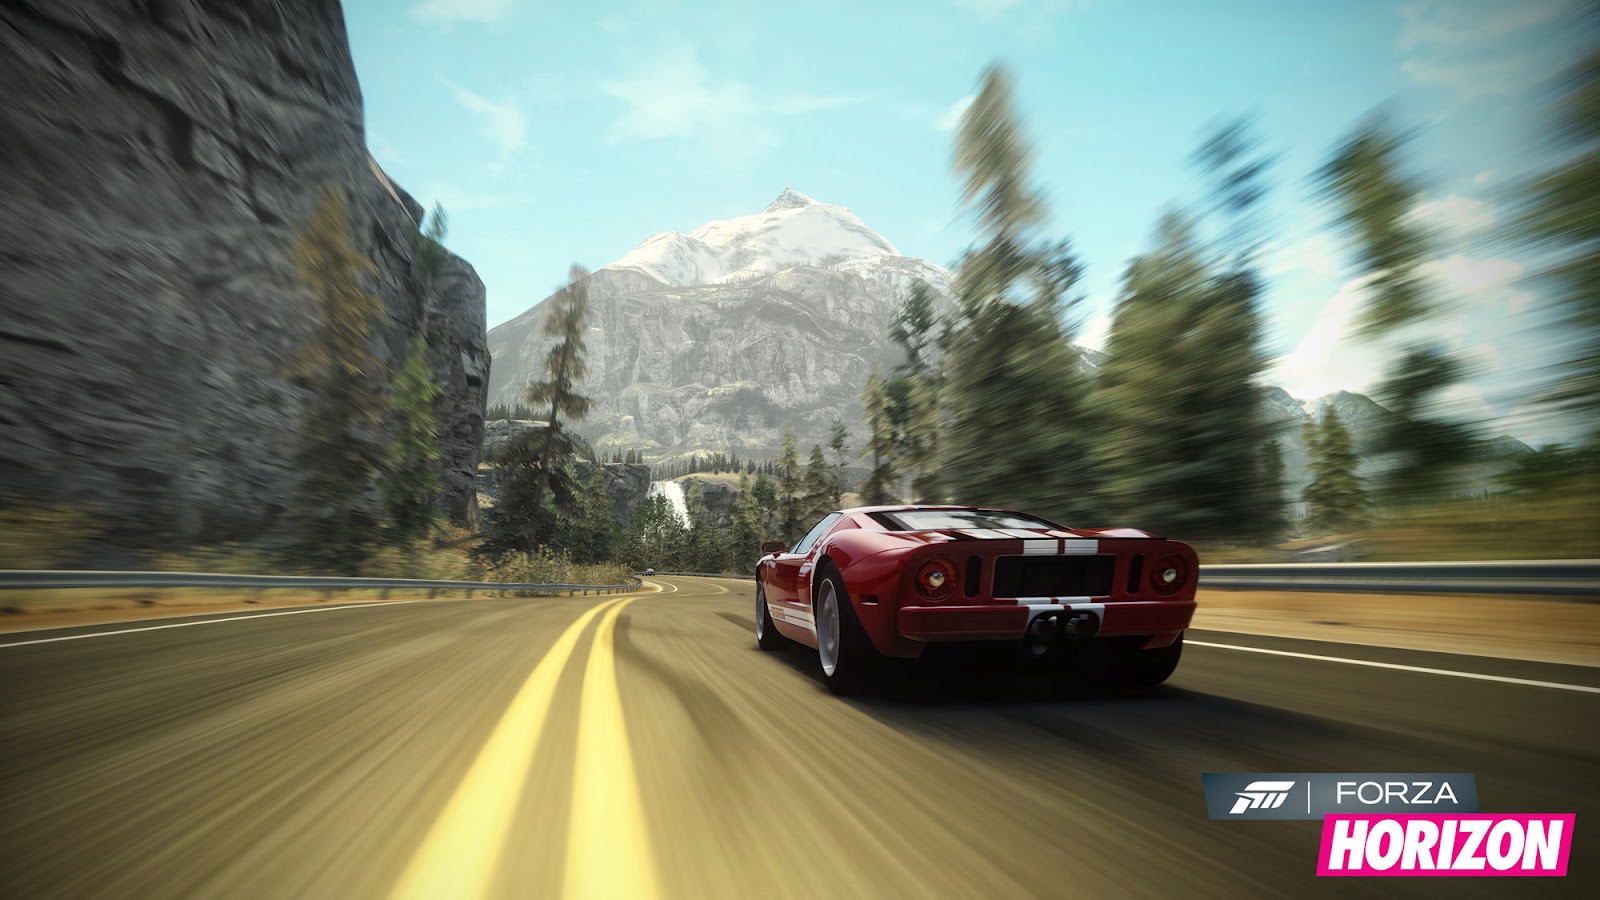 Forza Horizon HD & Widescreen Wallpaper 0.41242992497238